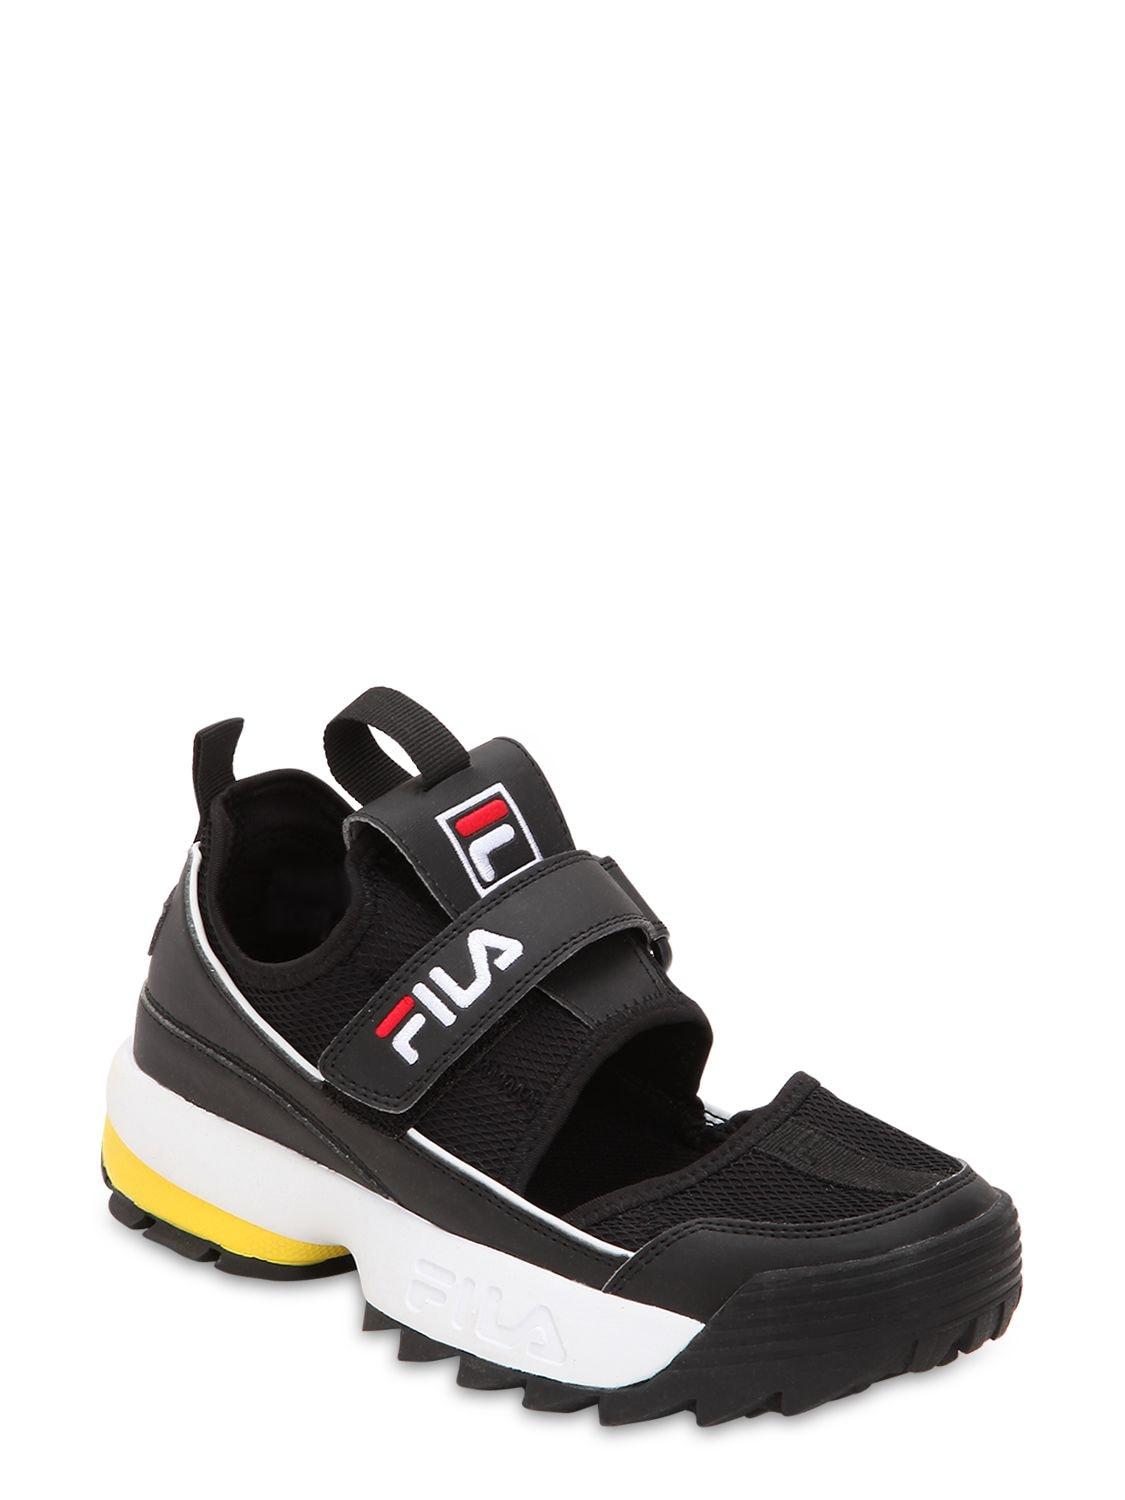 Fila Disruptor Half Sandal Flats in Black | Lyst